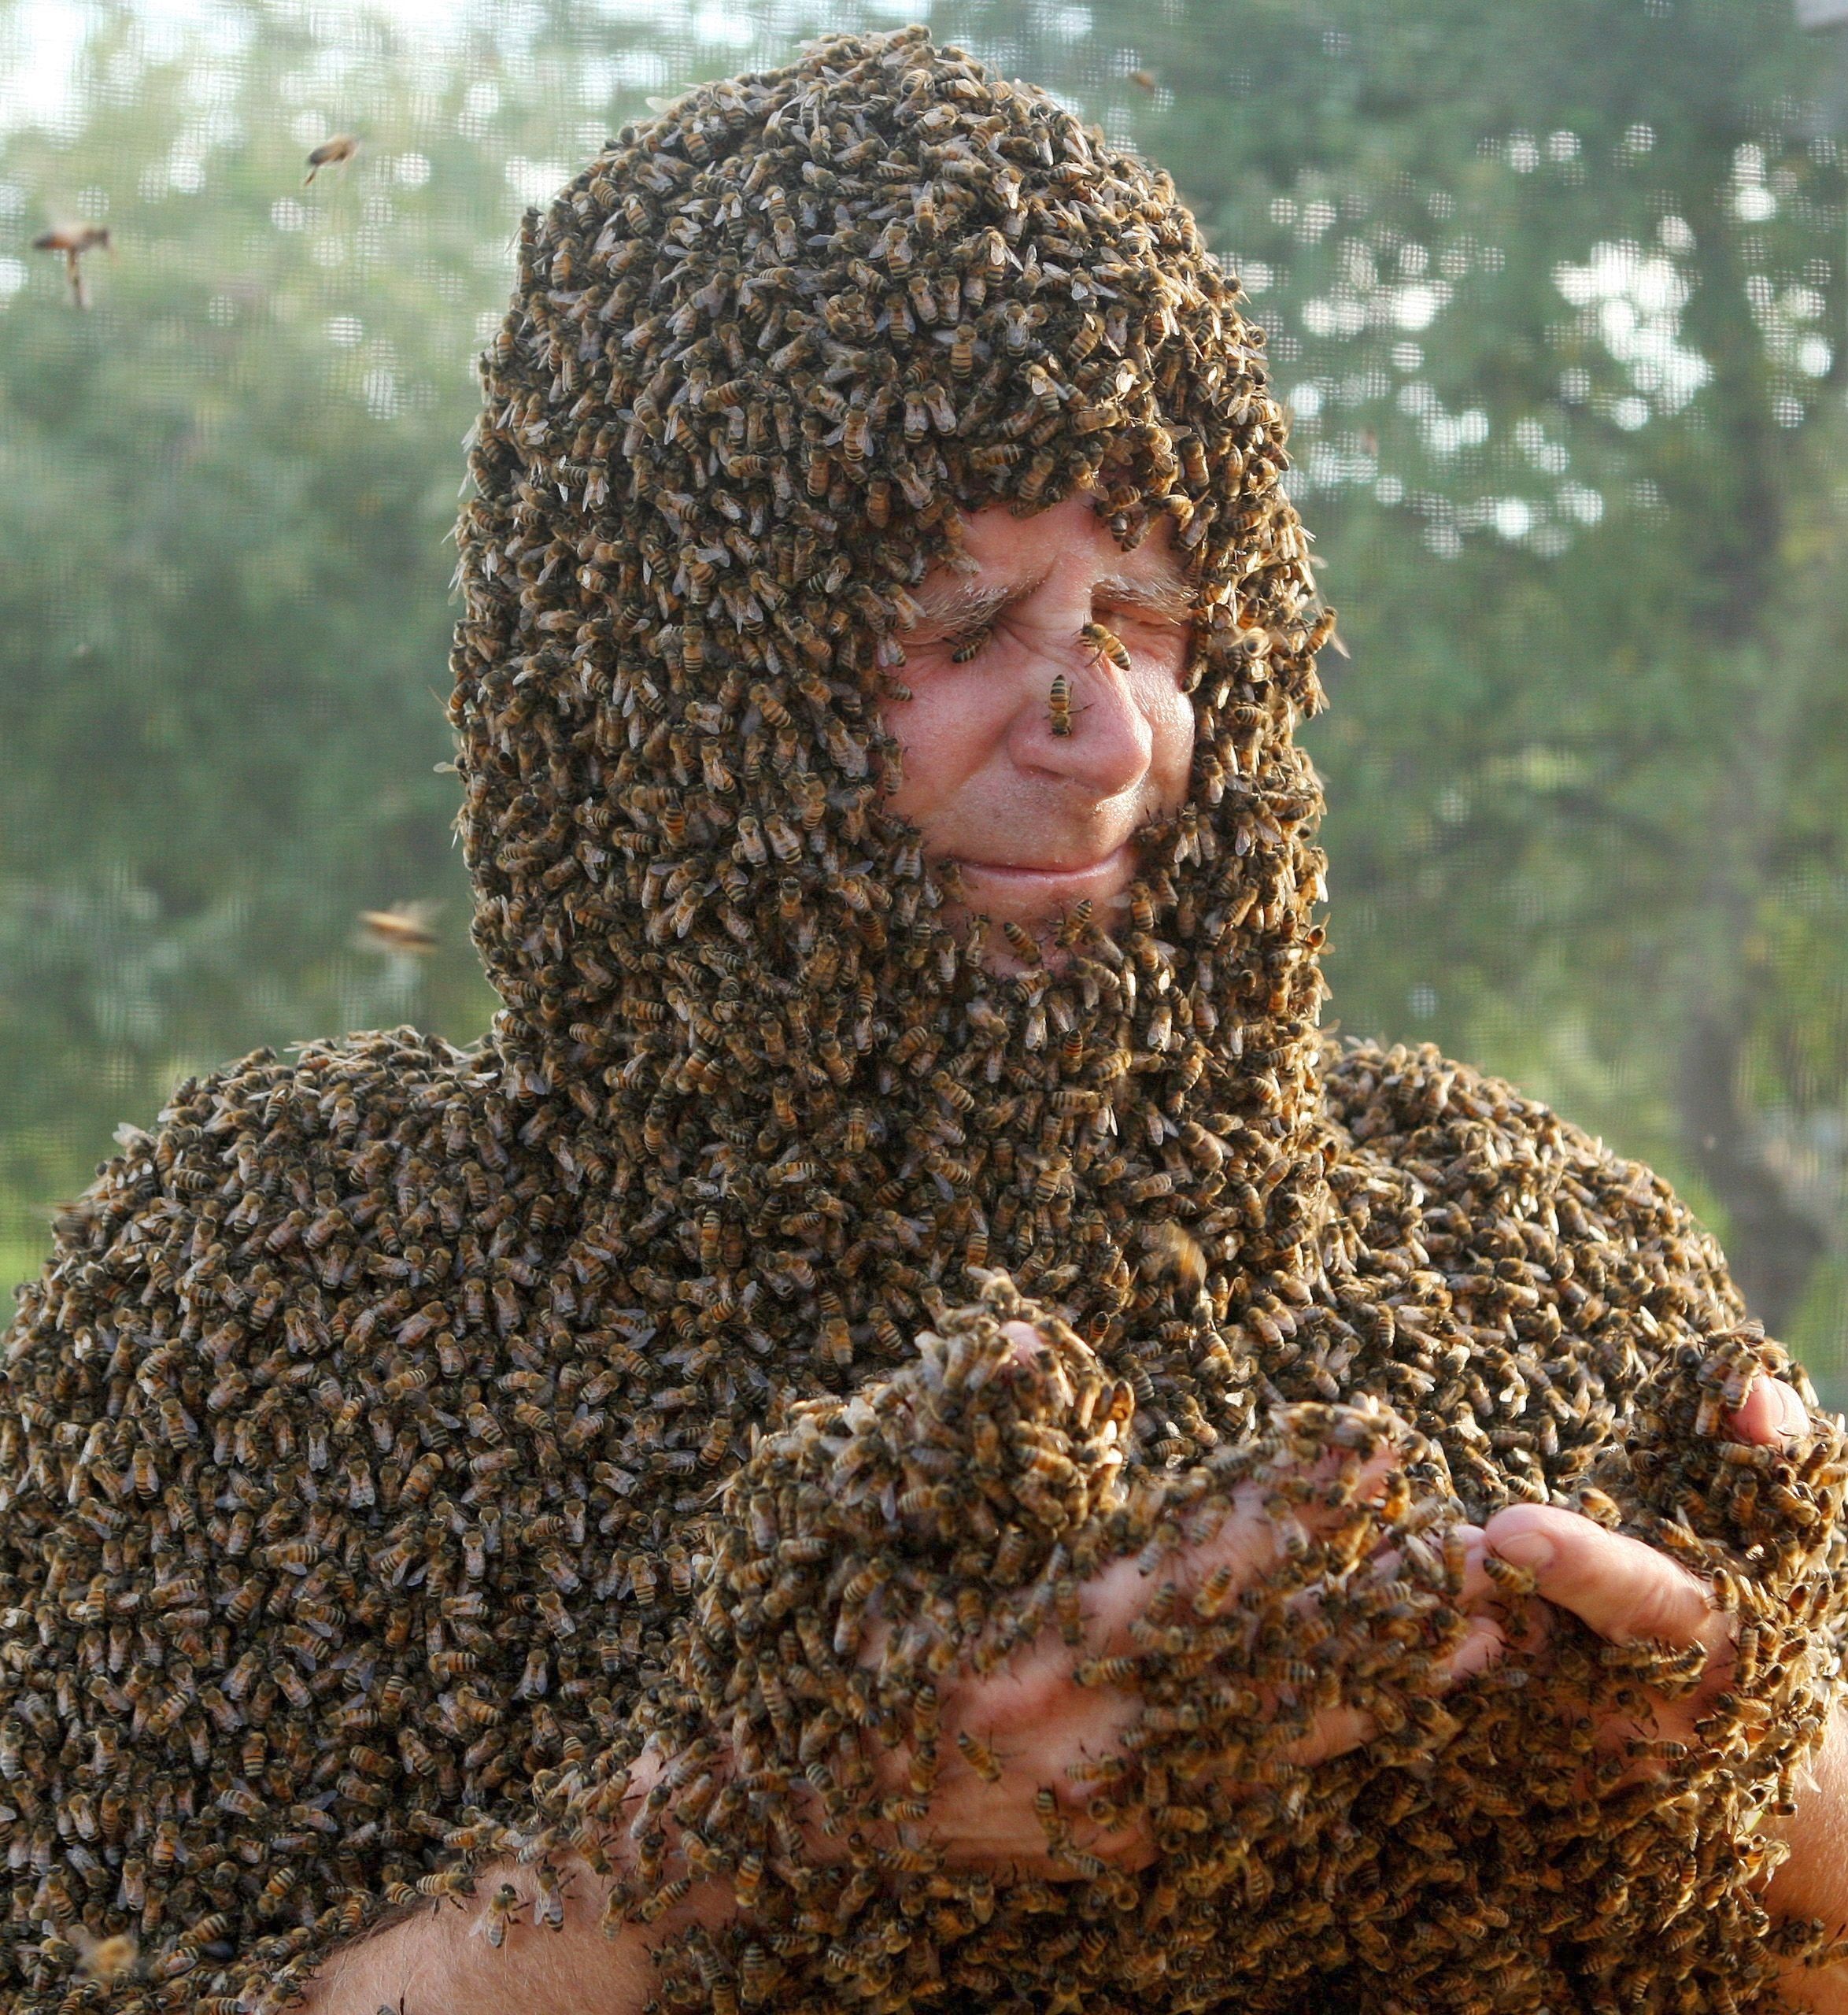 Concursul interzis celor slabi de inima. Ce s-a intamplat cu acest barbat dupa ce s-a lasat acoperit de sute de mii de albine - Imaginea 2